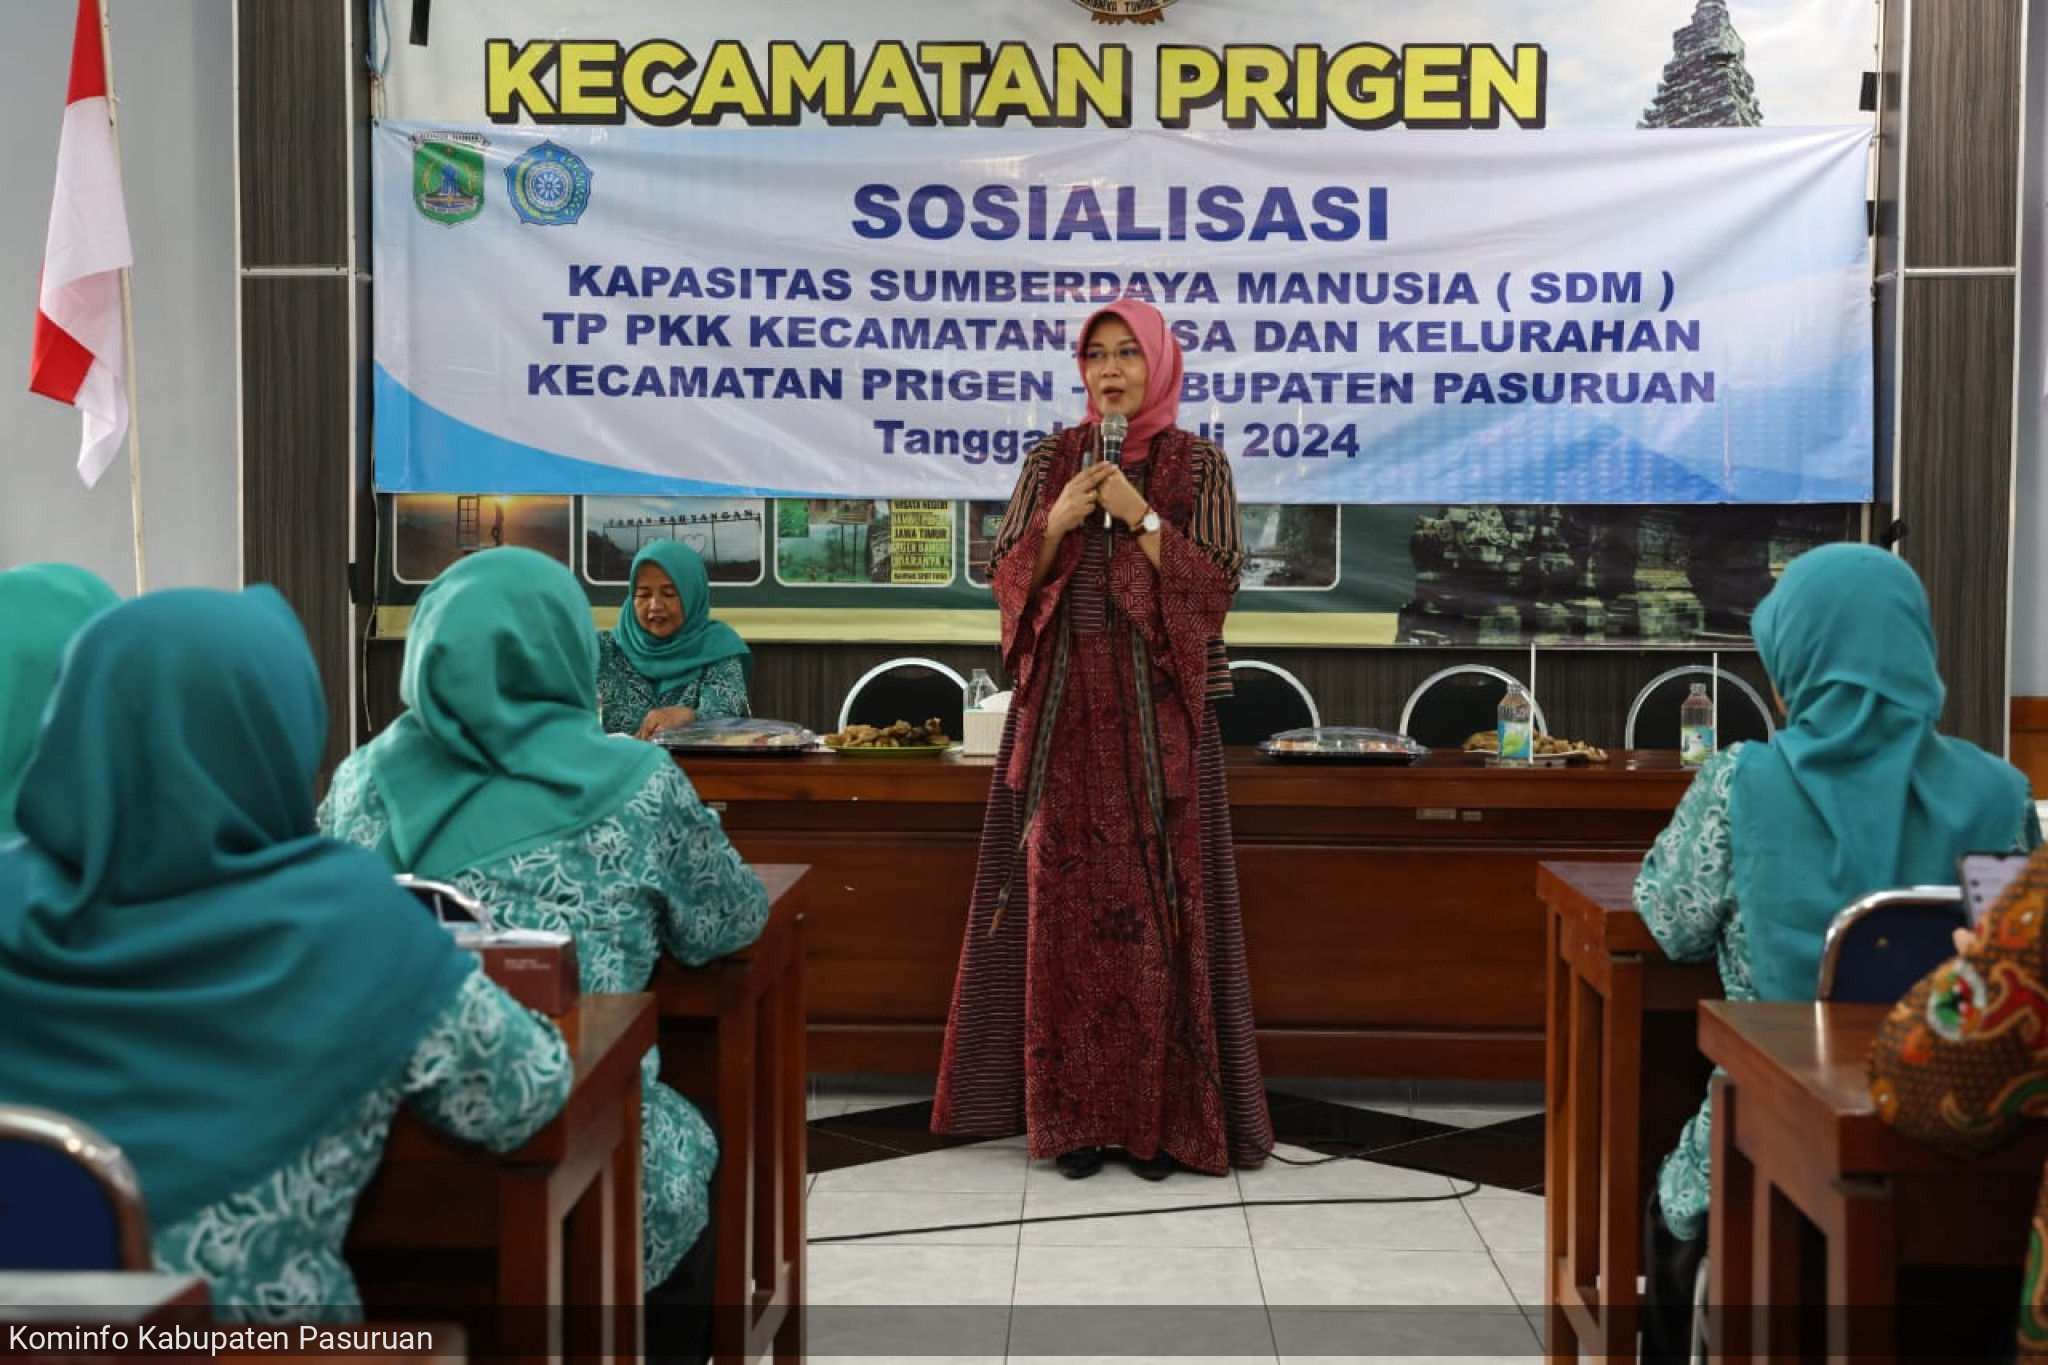 Sosialisasi Kapasitas SDM, Pj. Ketua TP PKK, Ny. Luhur Andriyanto Tekankan Pentingnya Pemenuhan Gizi Tubuh Sebagai Prioritas Utama